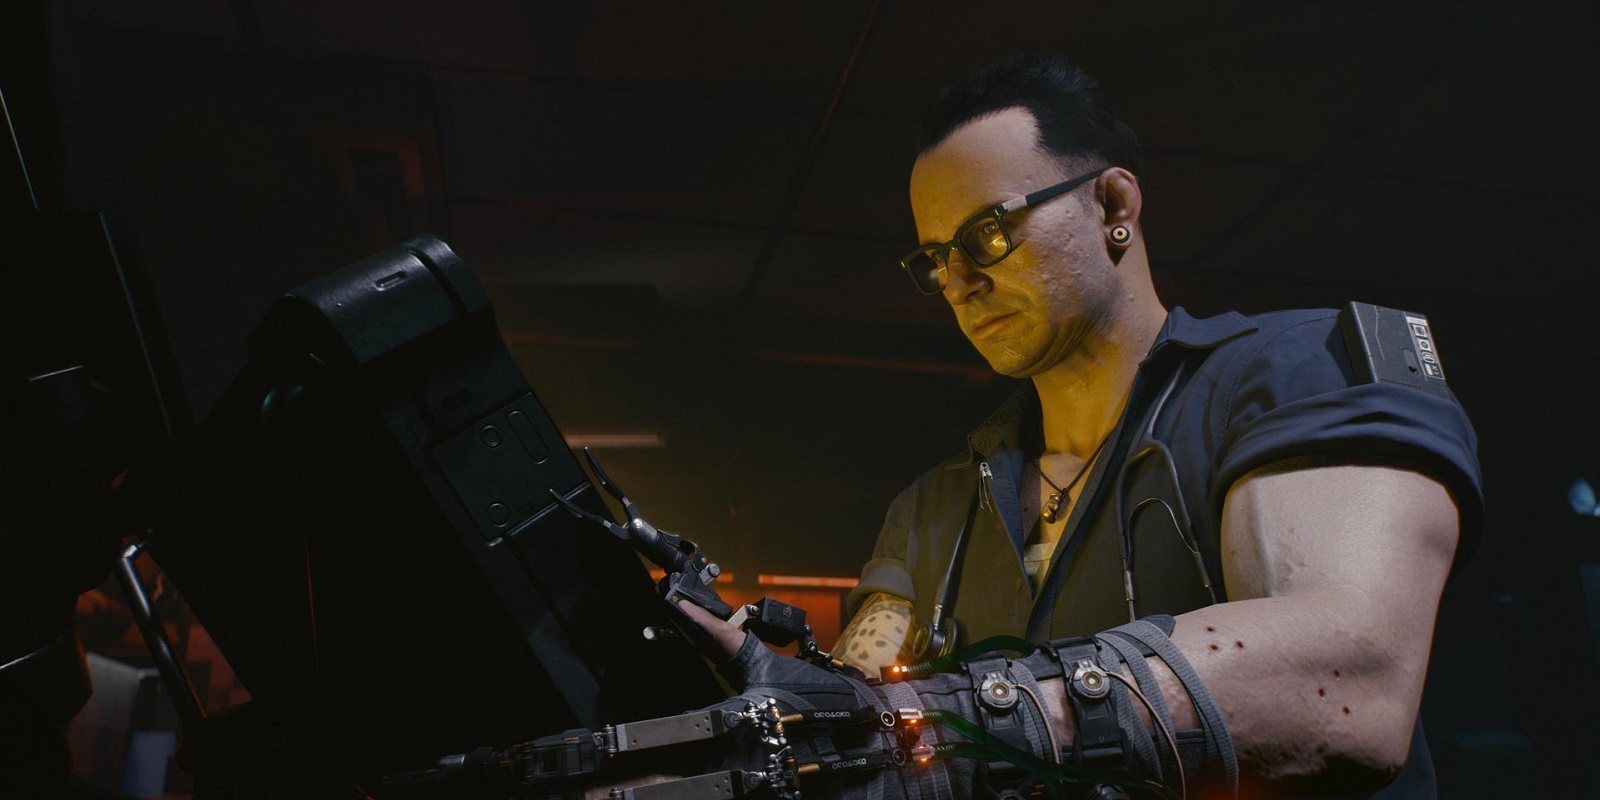 Al comprar 'Cyberpunk 2077' en Xbox One obtendremos gratis la actualización de Xbox Series X